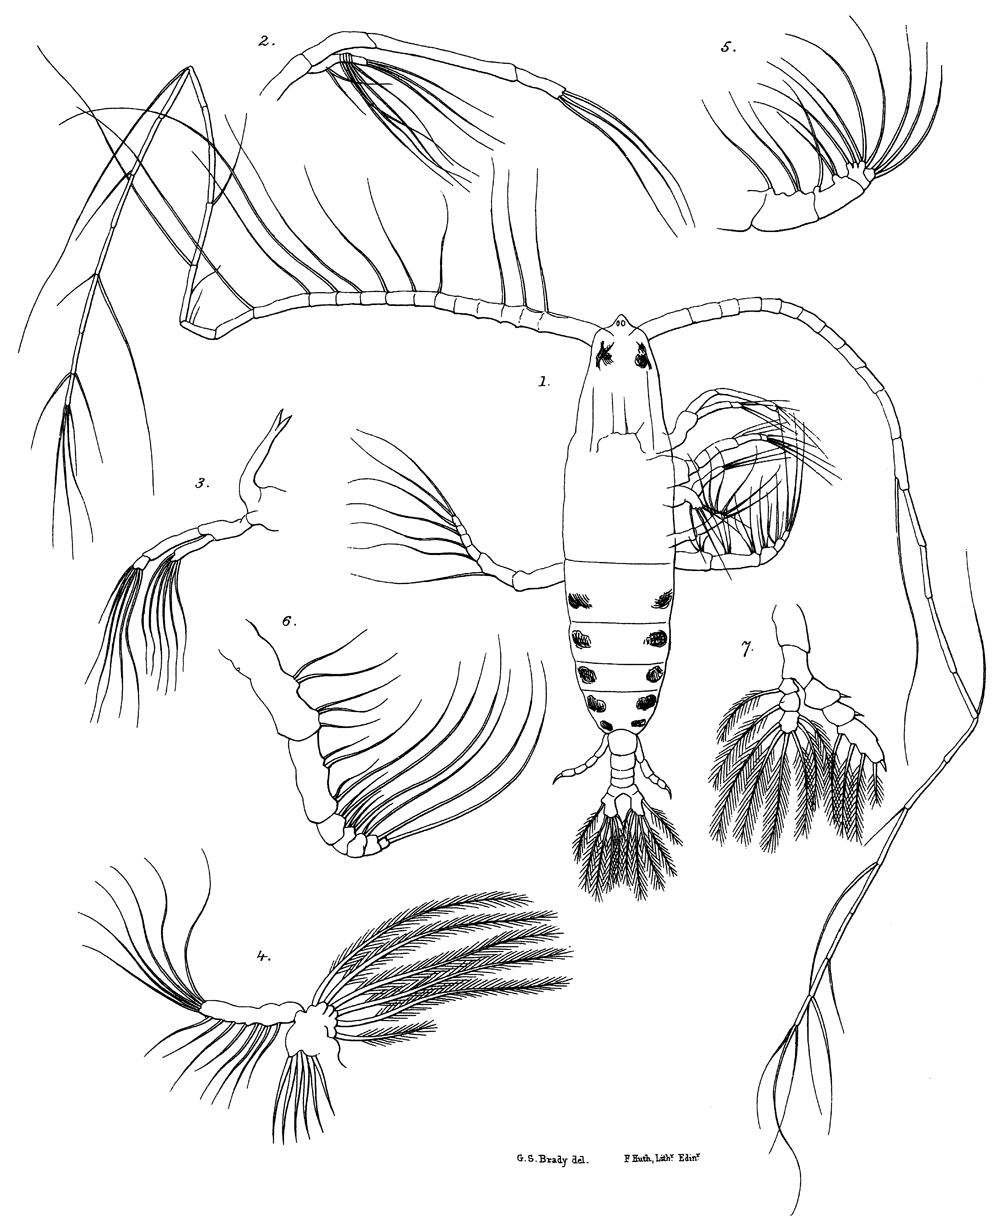 Espce Haloptilus longicornis - Planche 19 de figures morphologiques